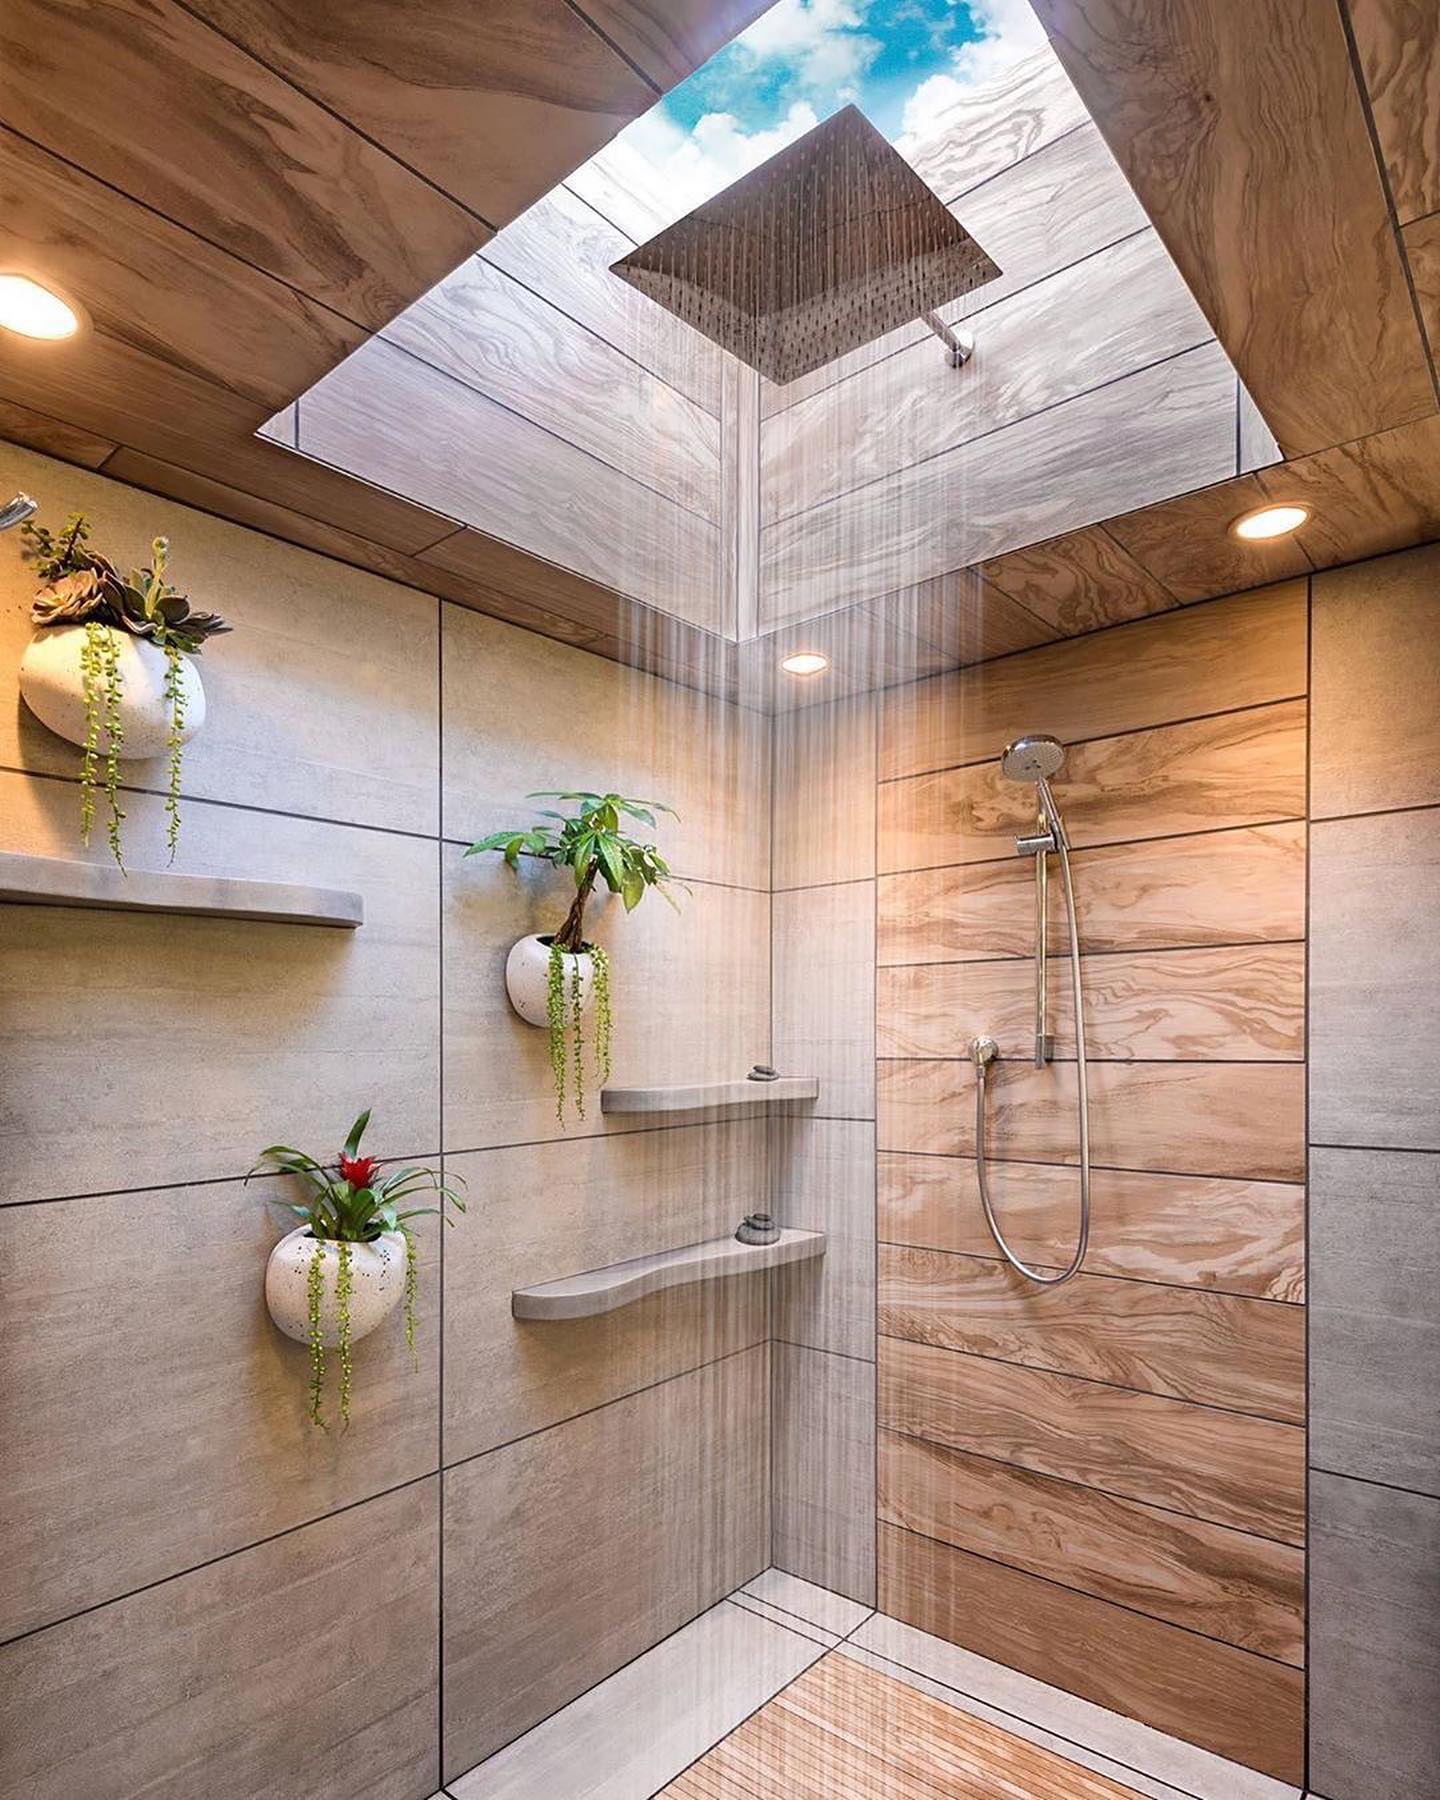 Bathroom By Mantis-Design Build